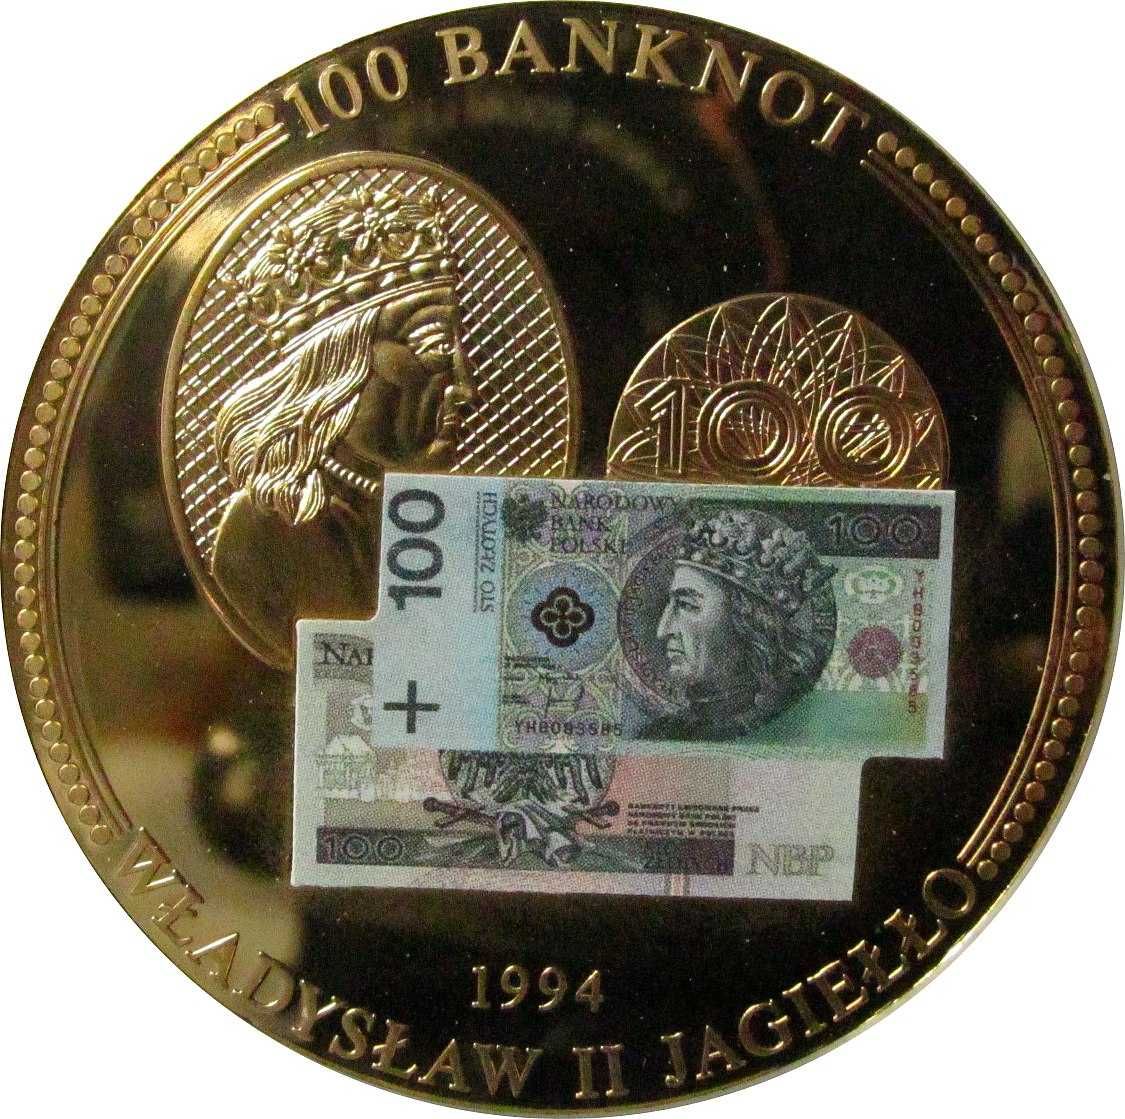 ZŁOTE Monety Medale z Wizerunkiem Banknotów Polskich Certyfikaty